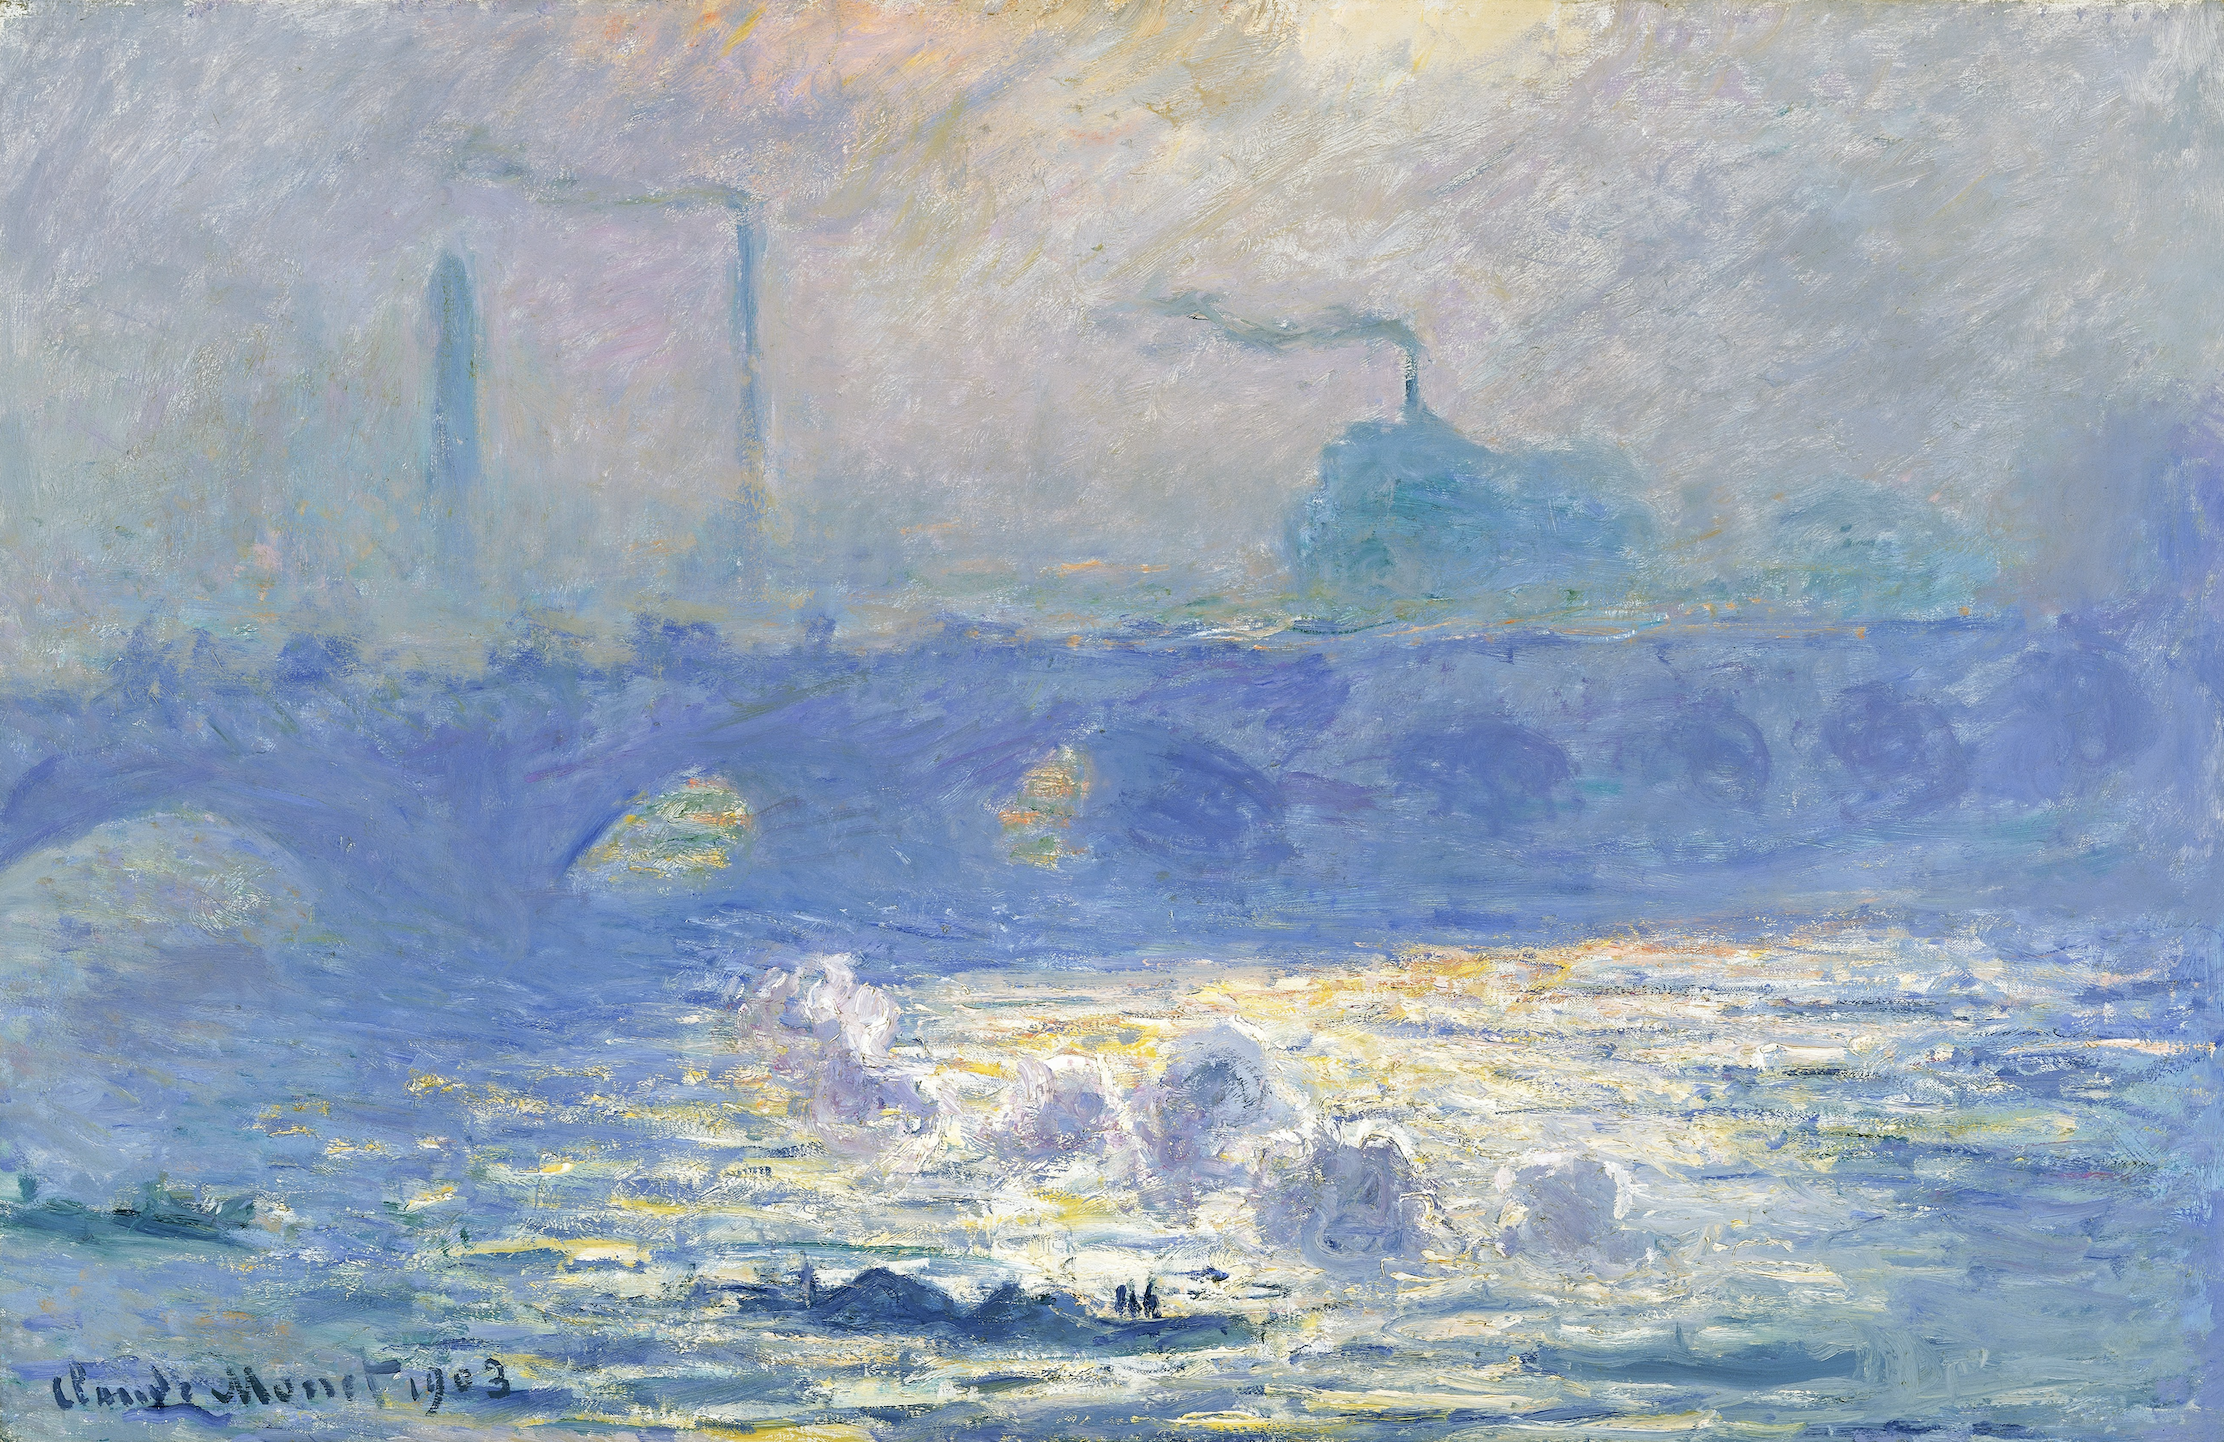 Waterloo Bridge, Claude Monet, 1903